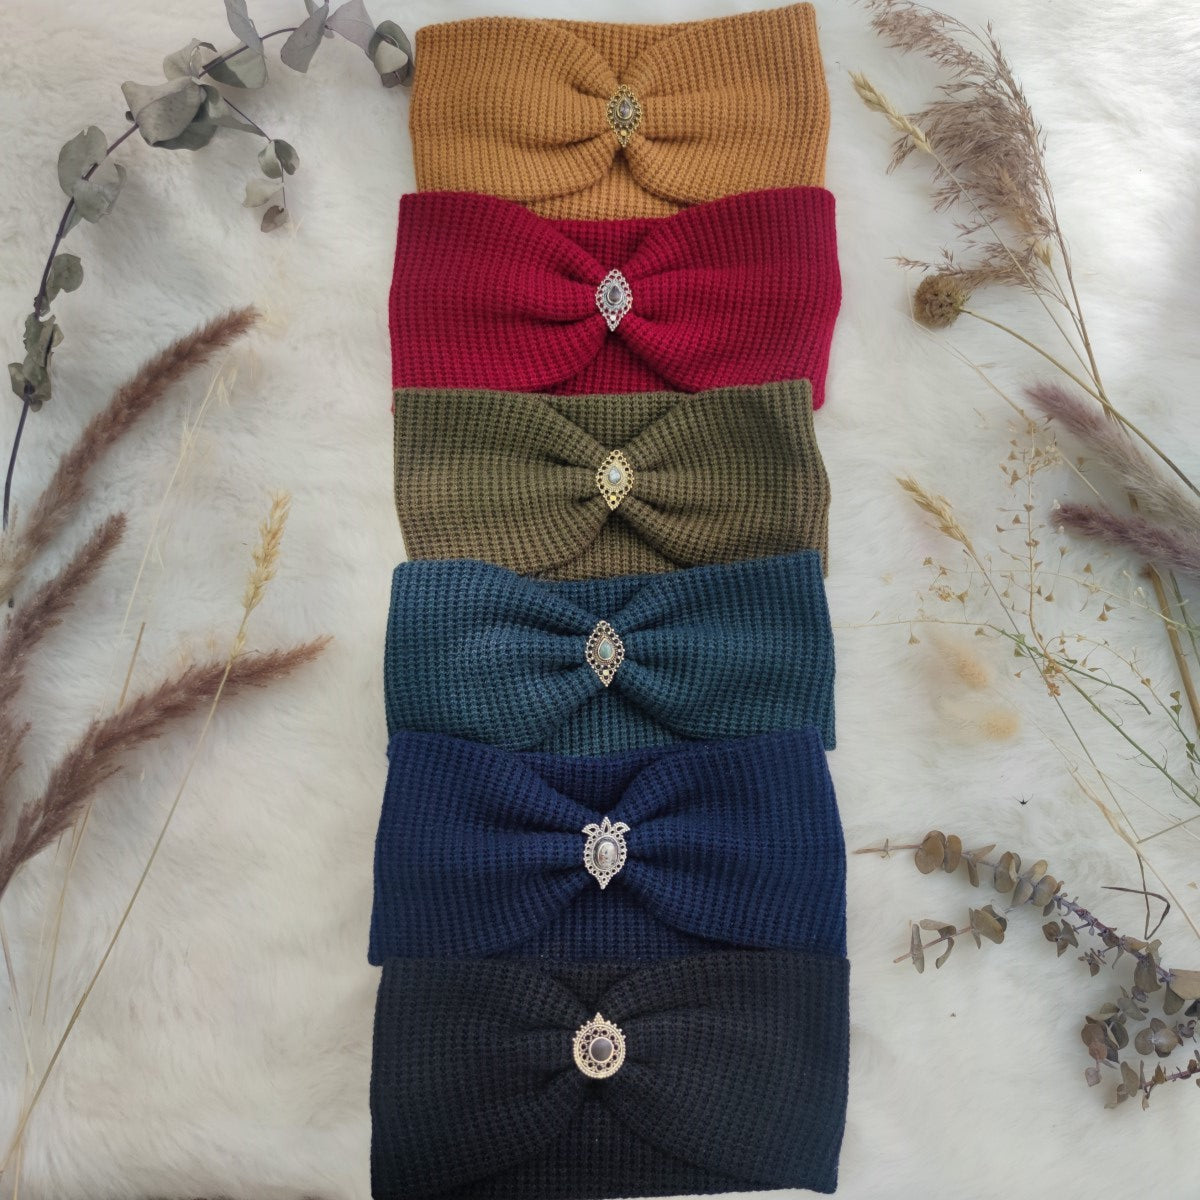 Boho Haarbänder Waffeloptik mit Edelsteinen verziert in 4 Farben - Happiness Kollektion